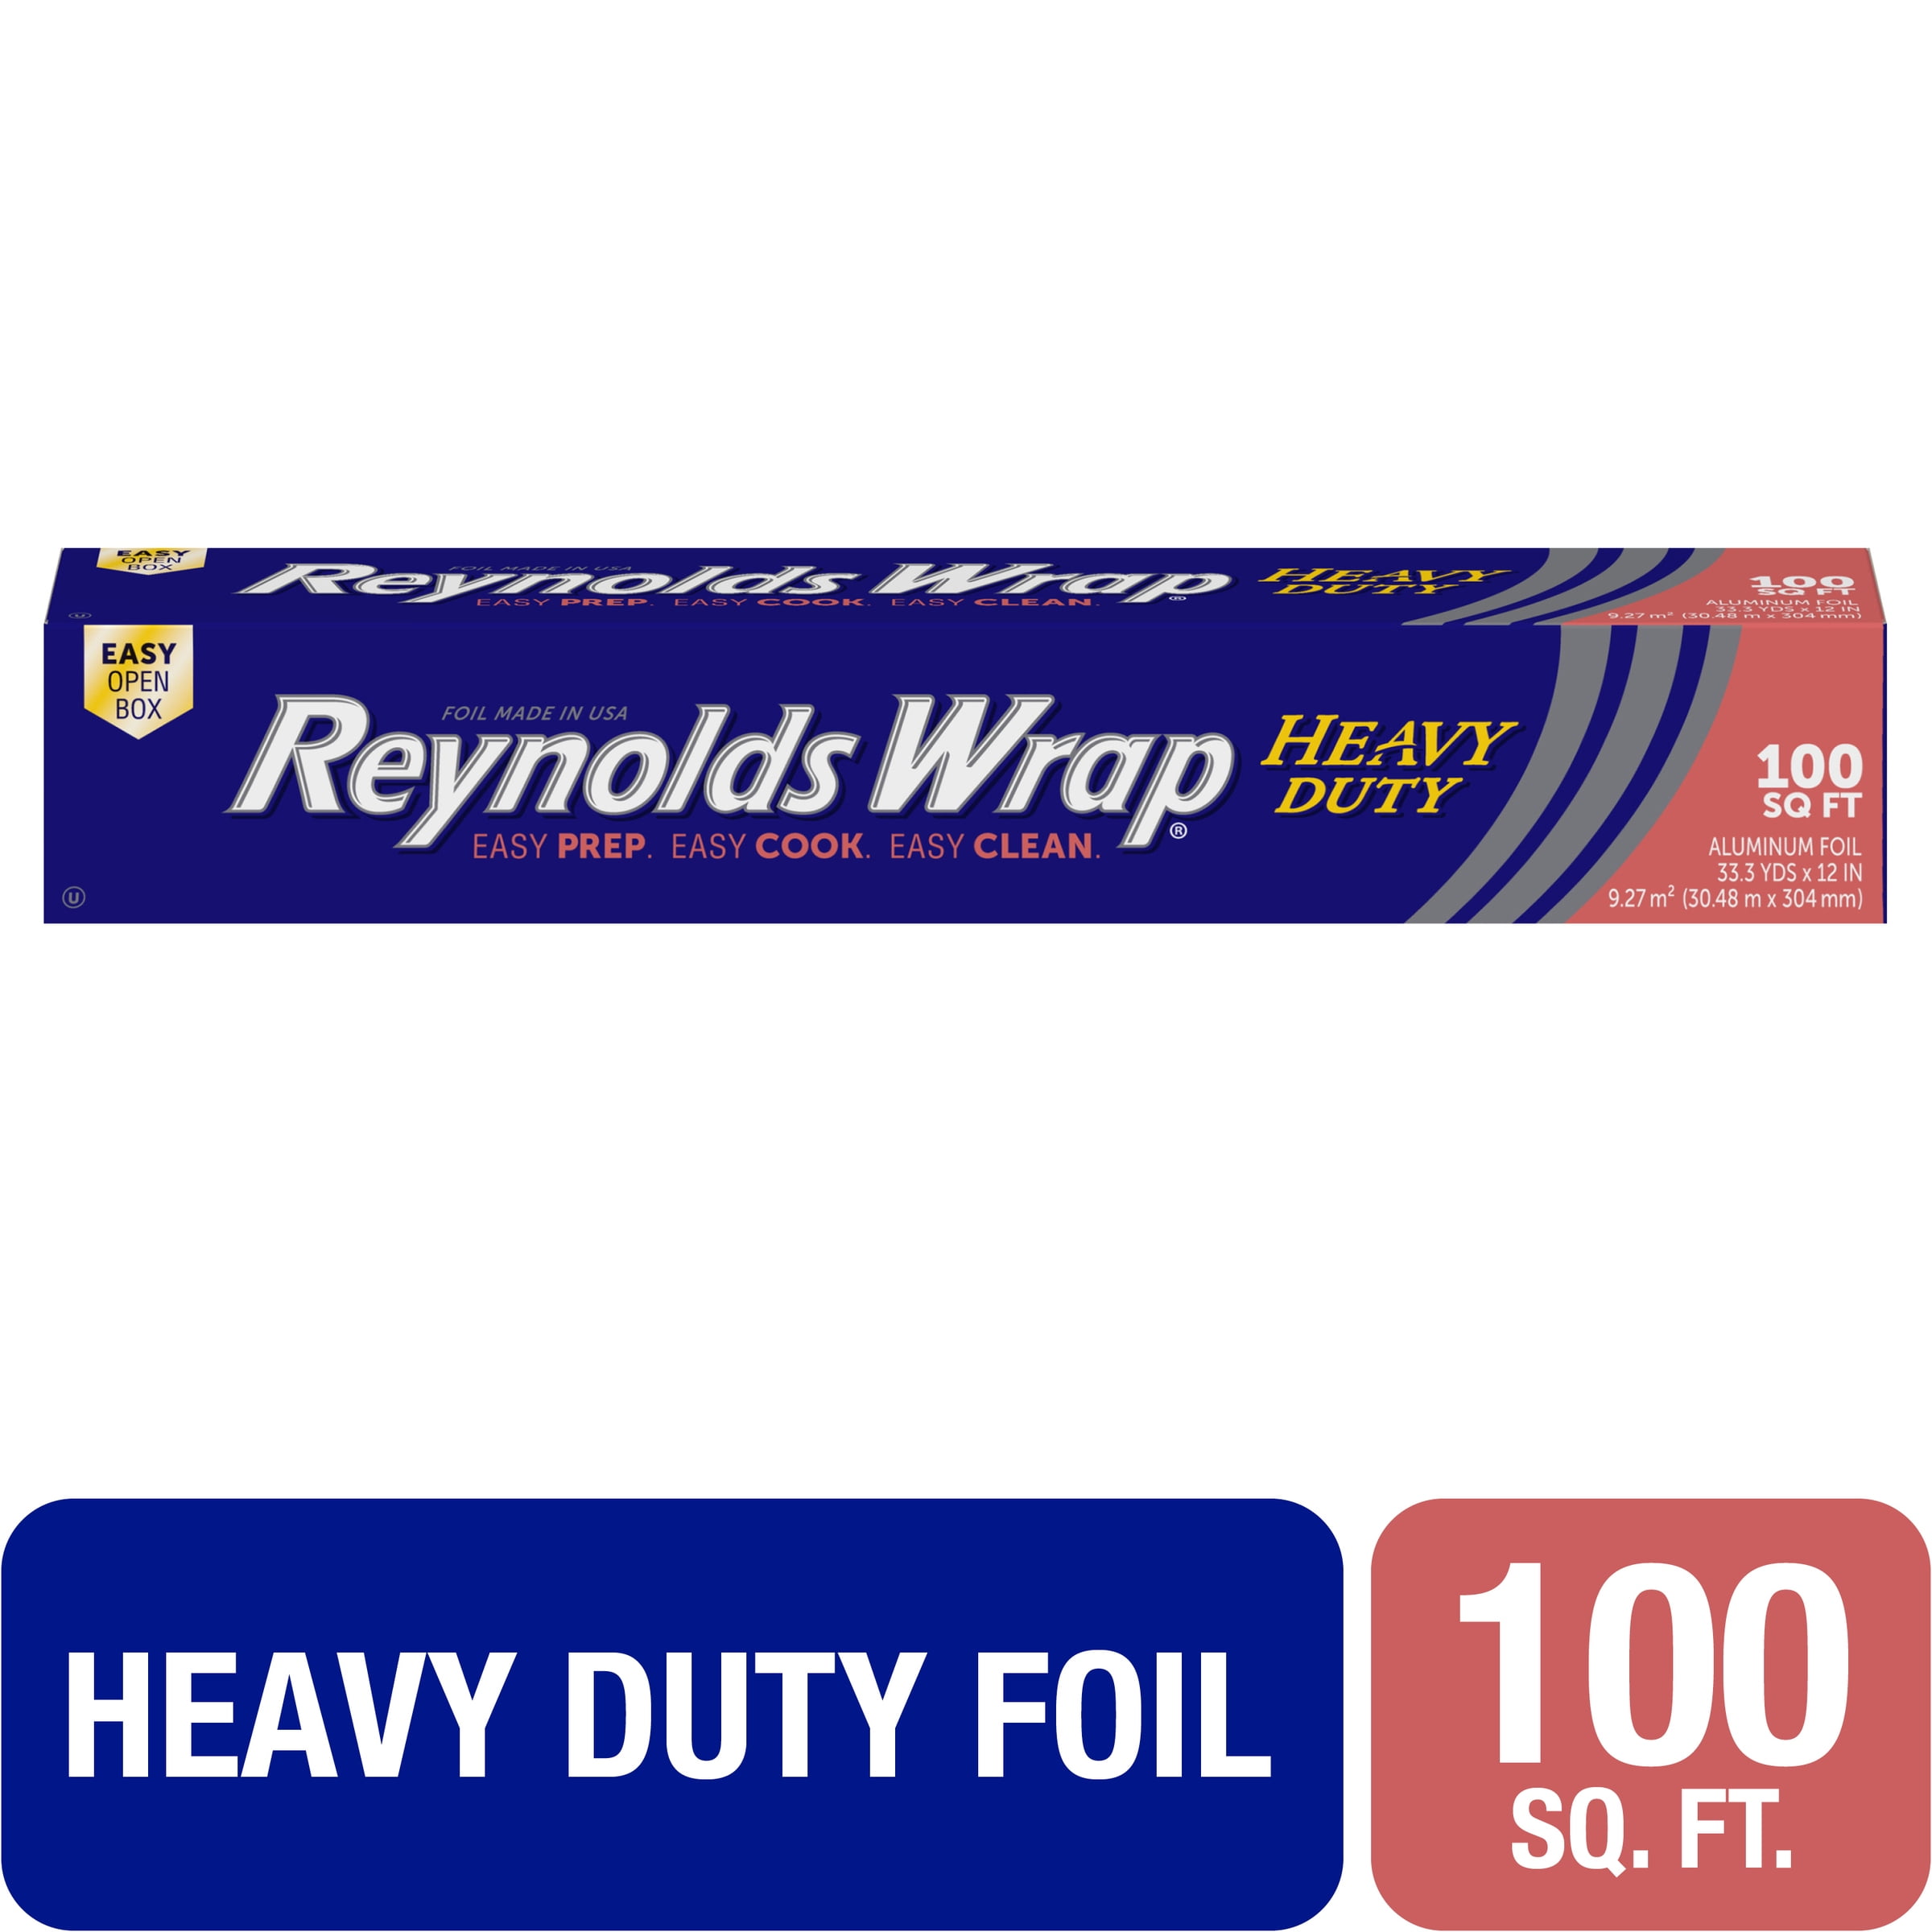 Refill Roll Professional Grade Aluminum Foil 12 x 100